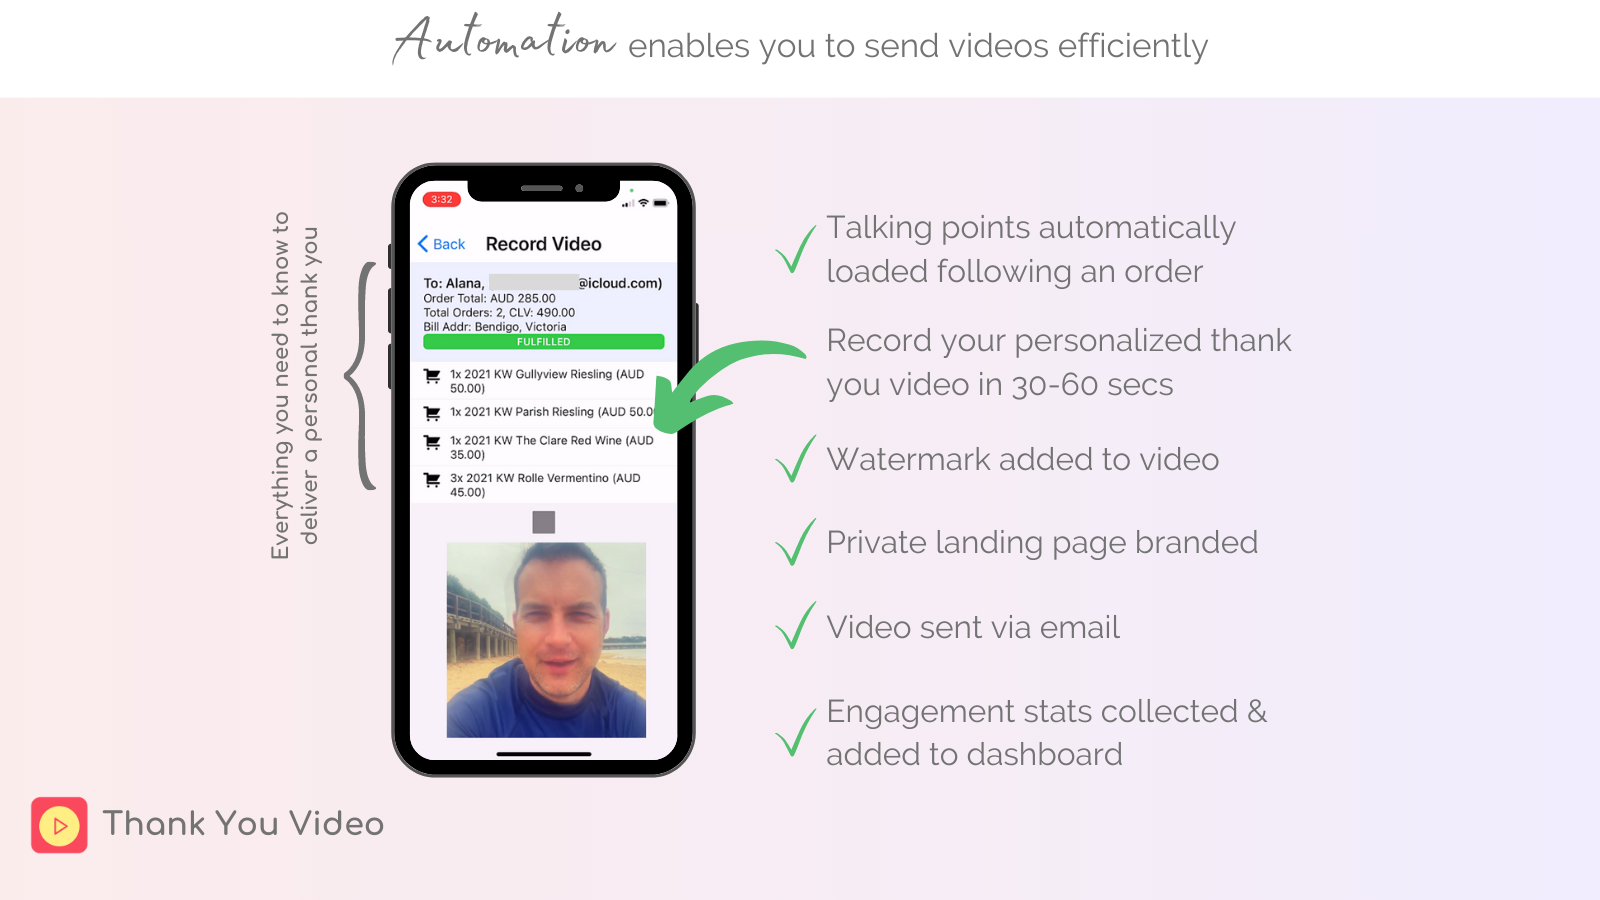 La automatización te permite enviar videos de manera eficiente